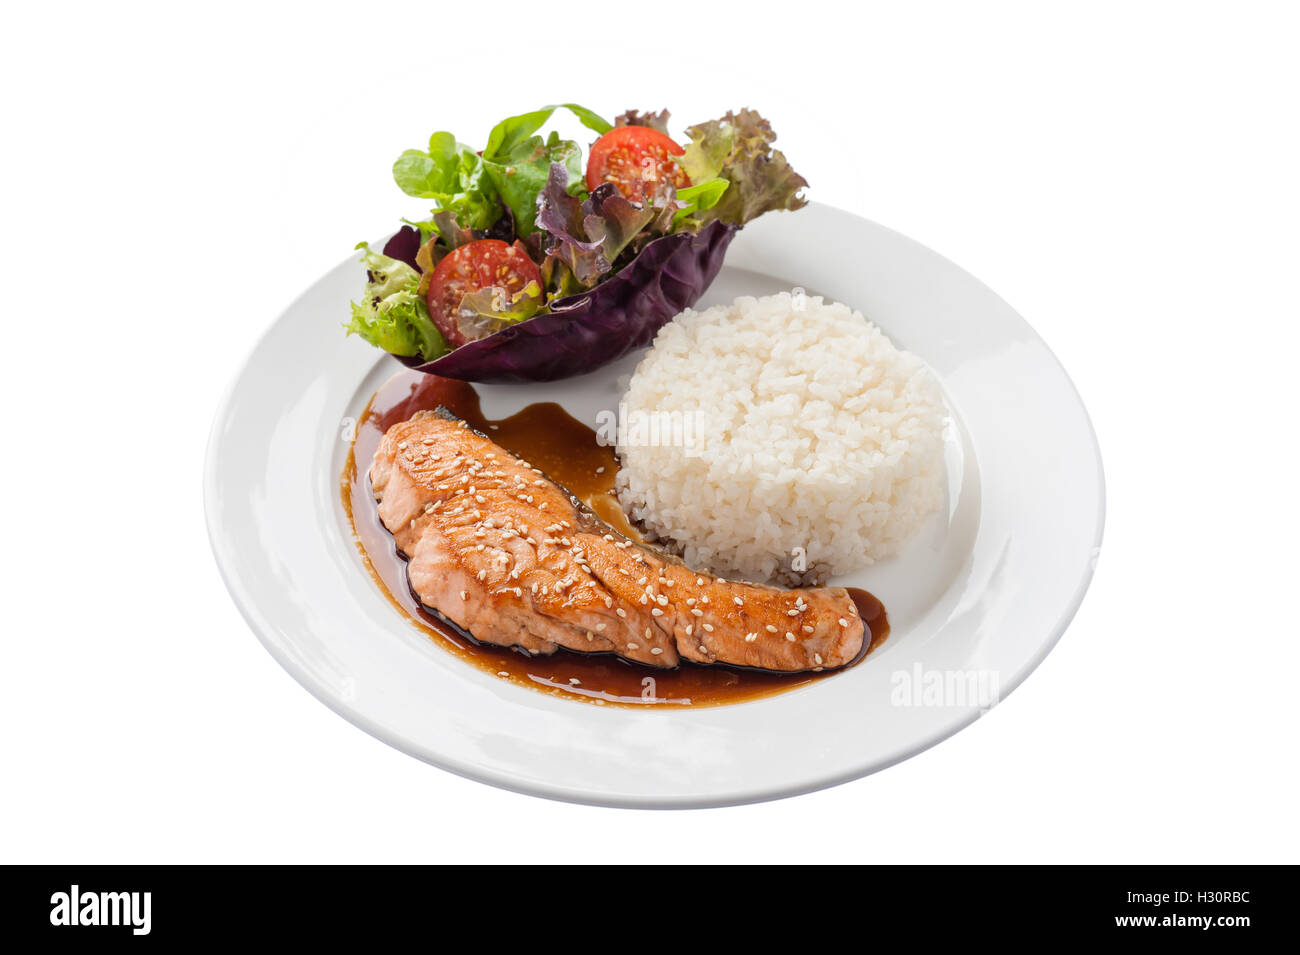 Vue avant du style fusion food habillé de saumon grillé avec sauce teriyaki sucrée japonaise (y compris le riz thaïlandais) garni de v Banque D'Images